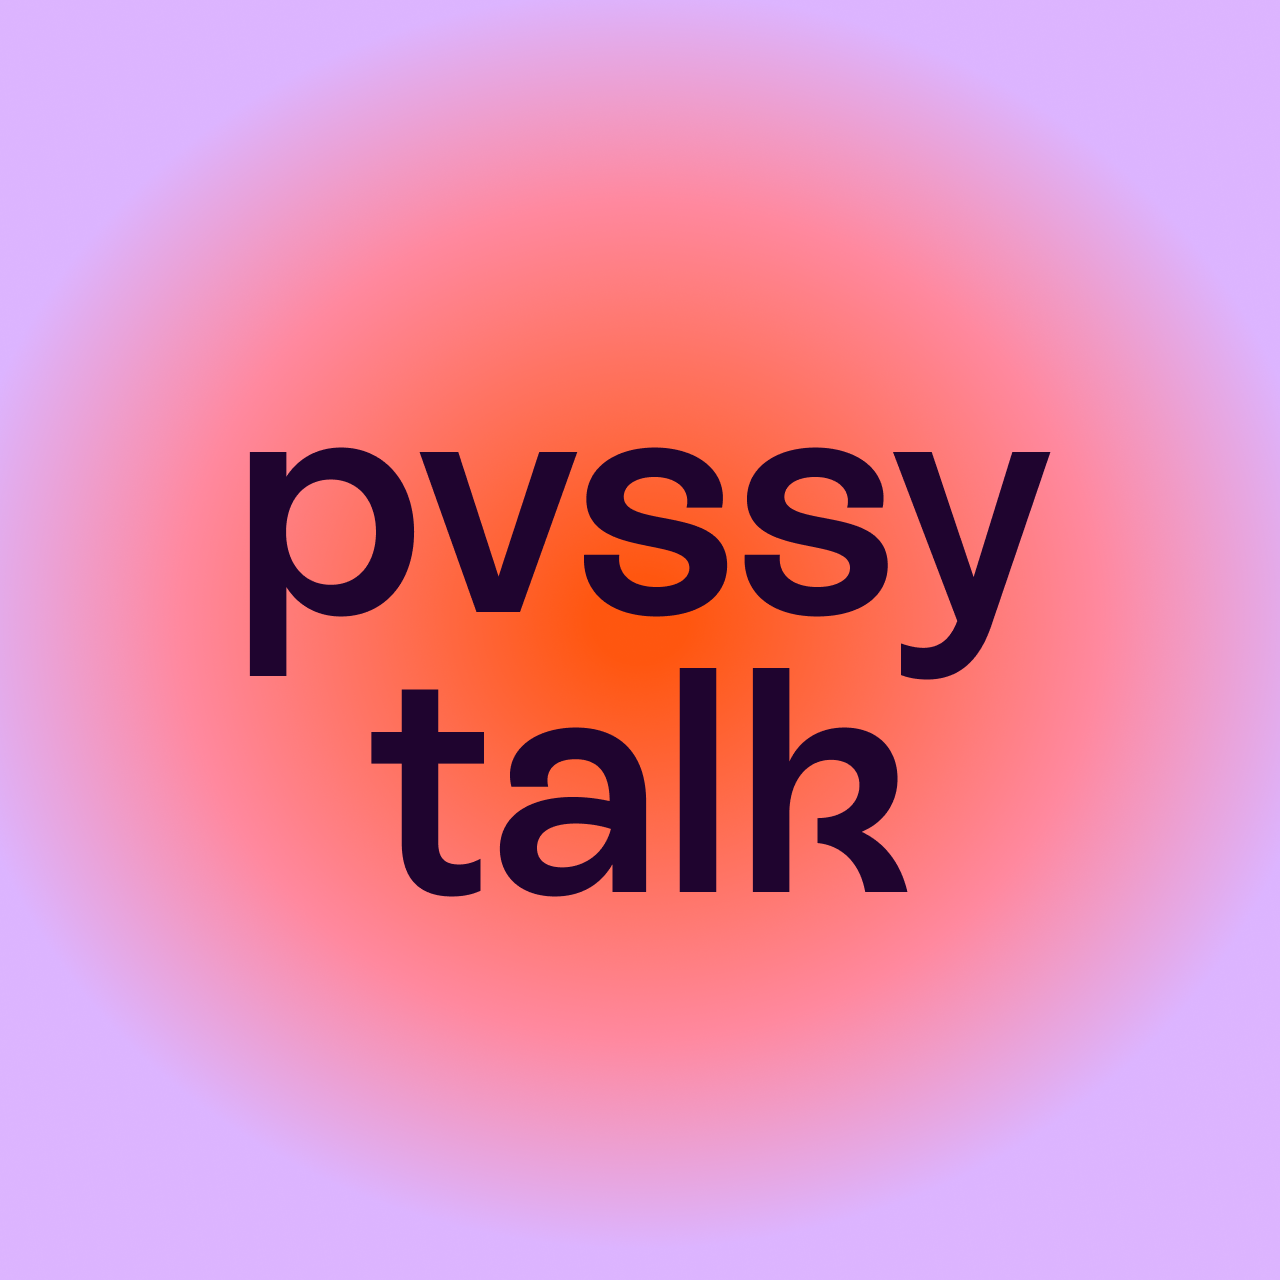 pvssy talk